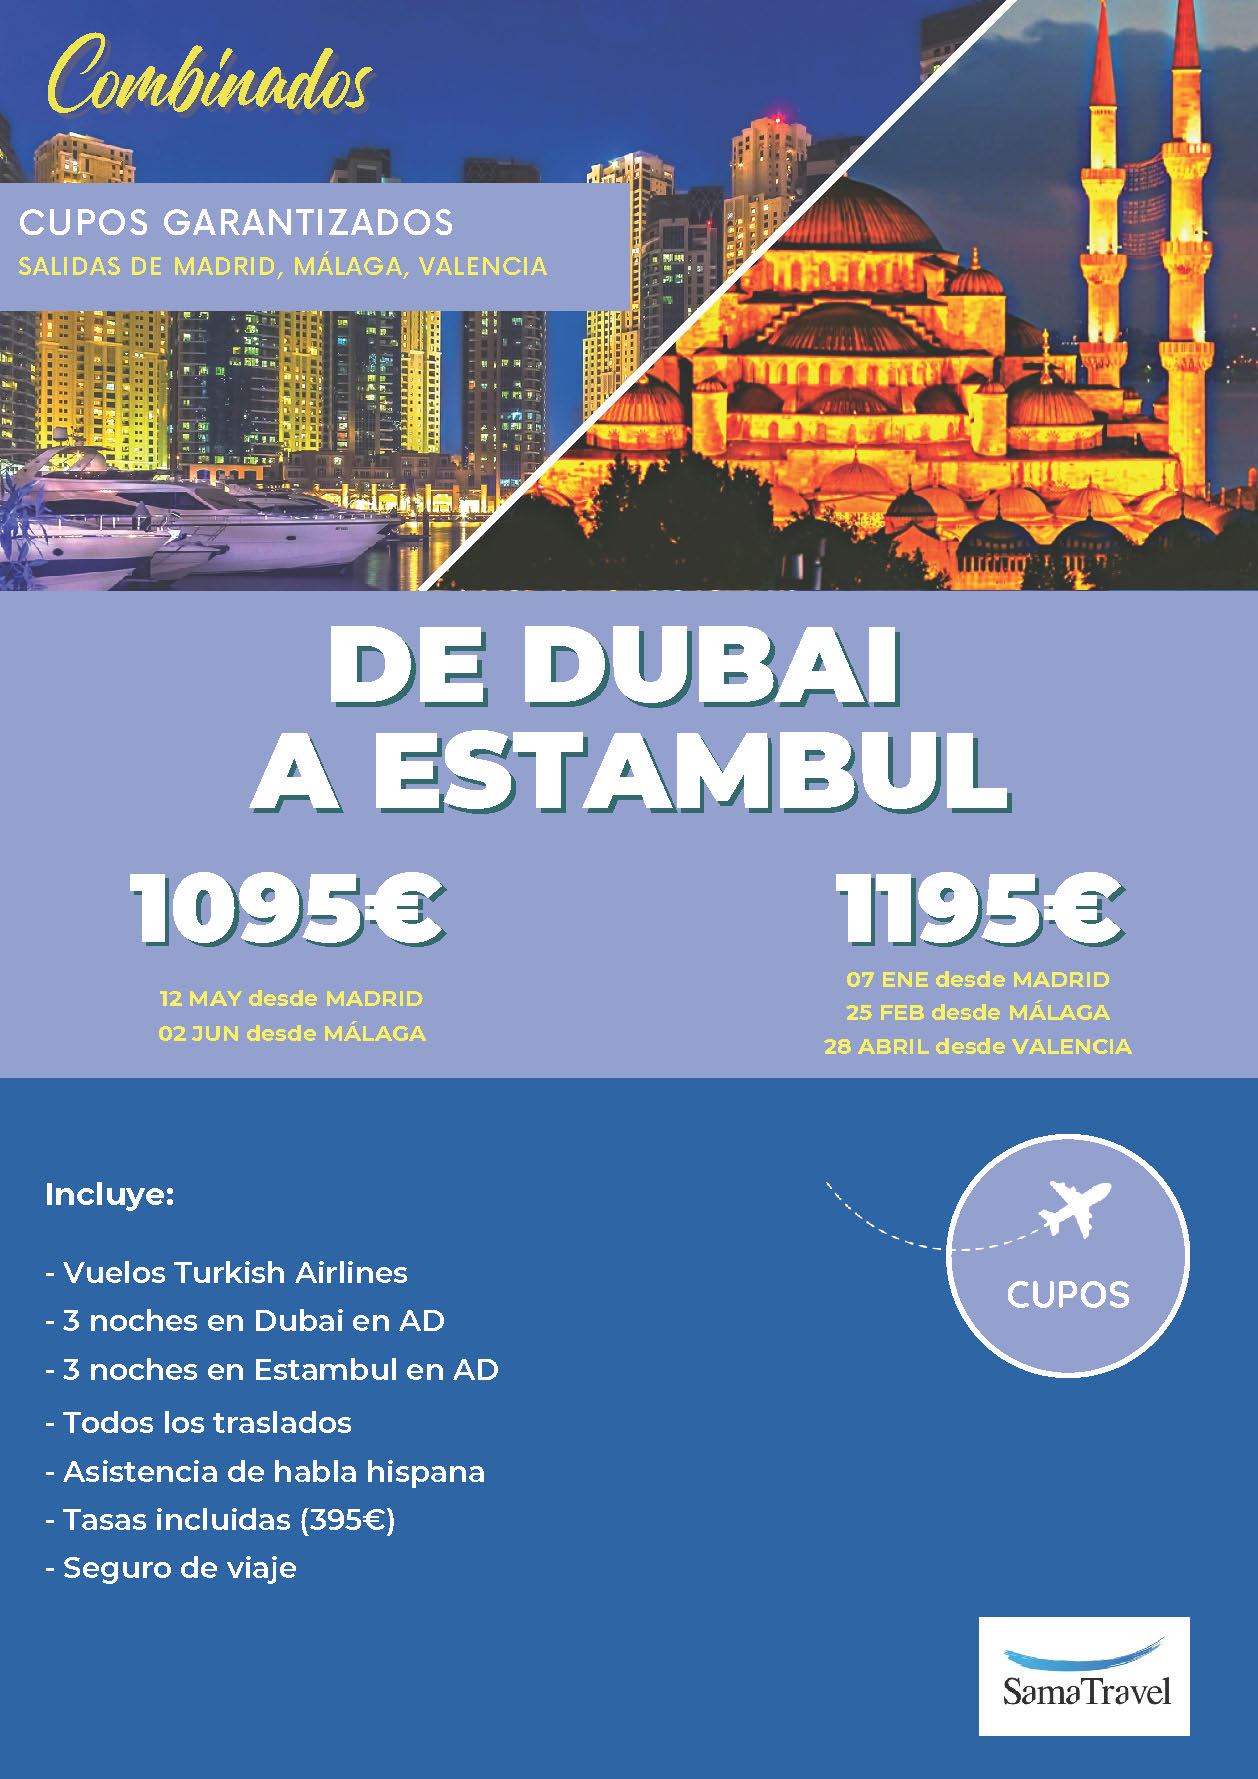 Oferta Sama Travel Primavera 2024 combinado Estambul Dubai cupos 8 dias salidas desde Madrid Valencia y Malaga